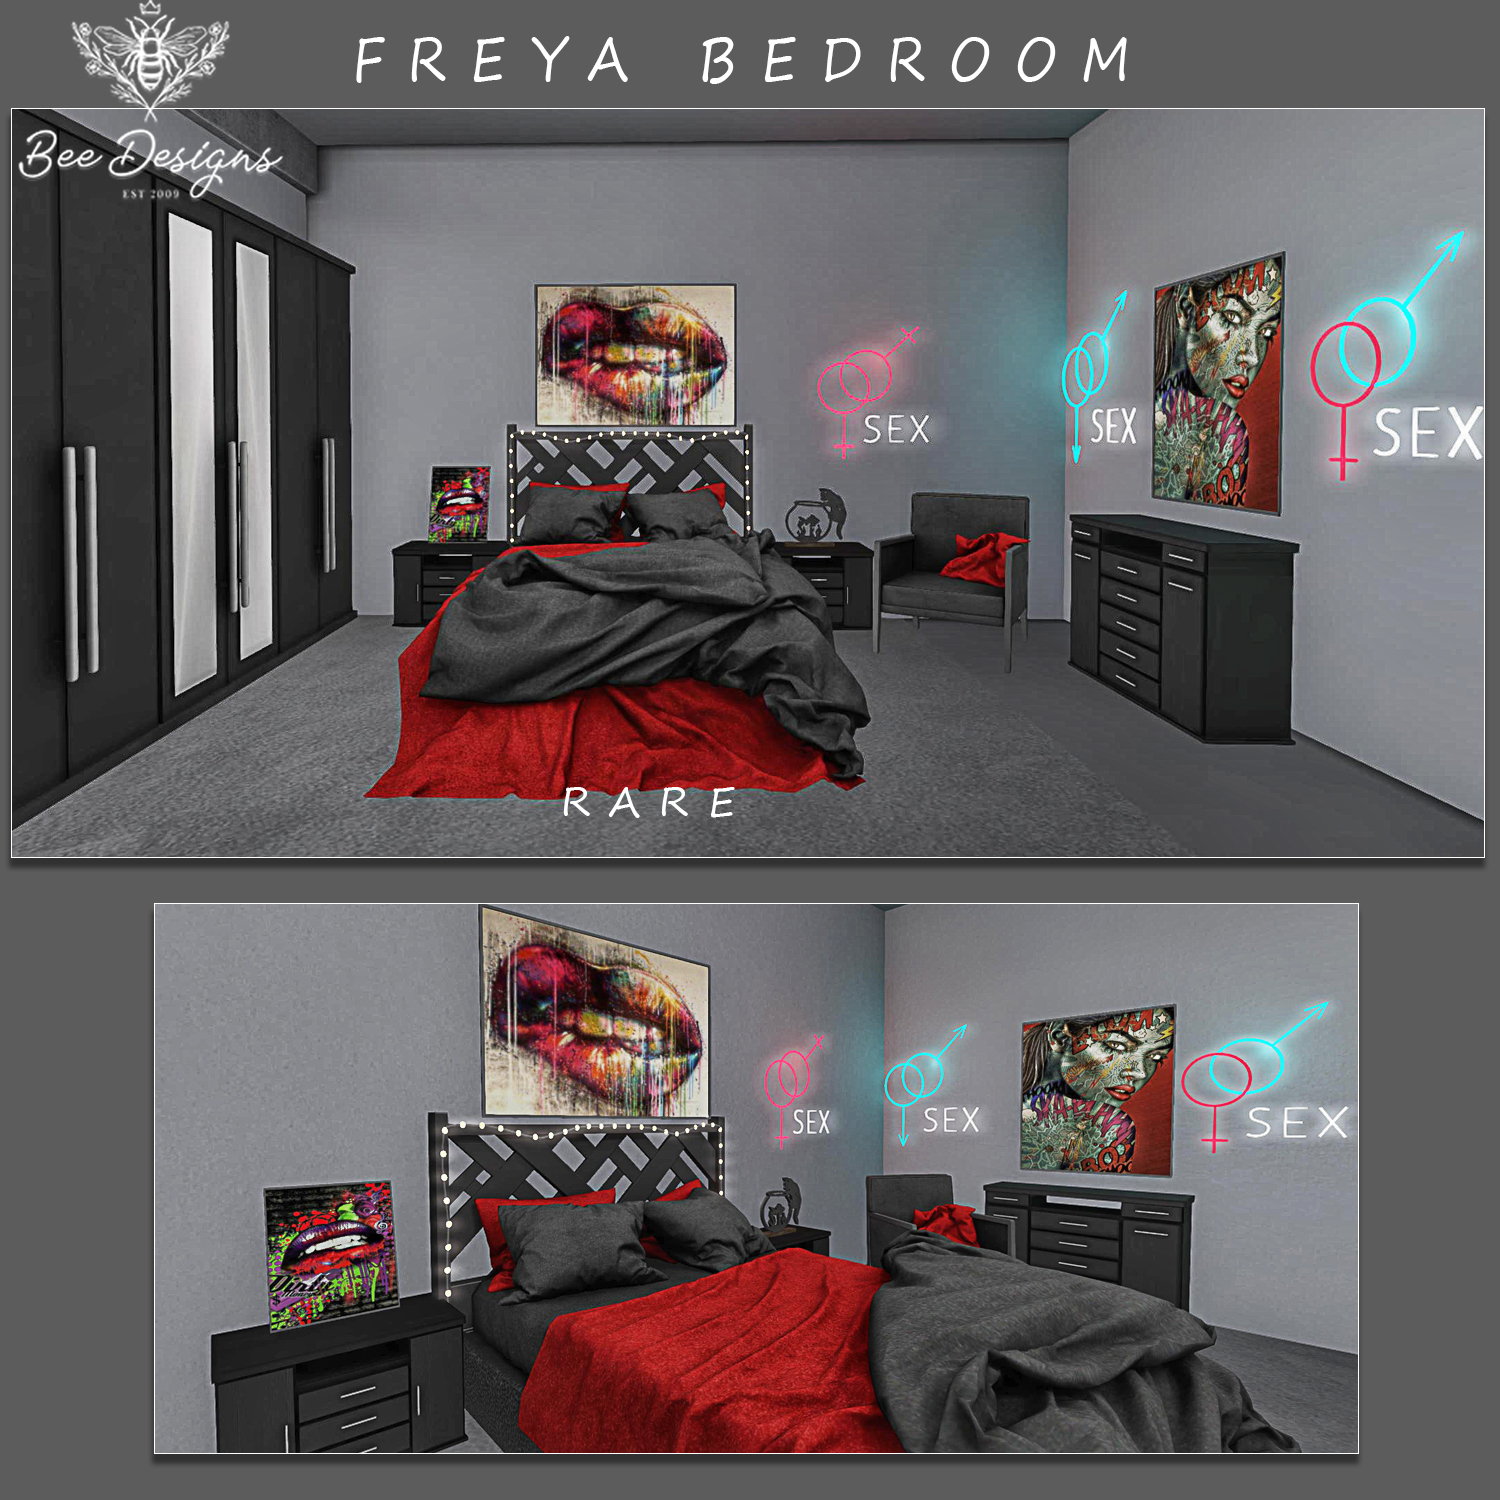 Bee Designs – Freya Bedroom